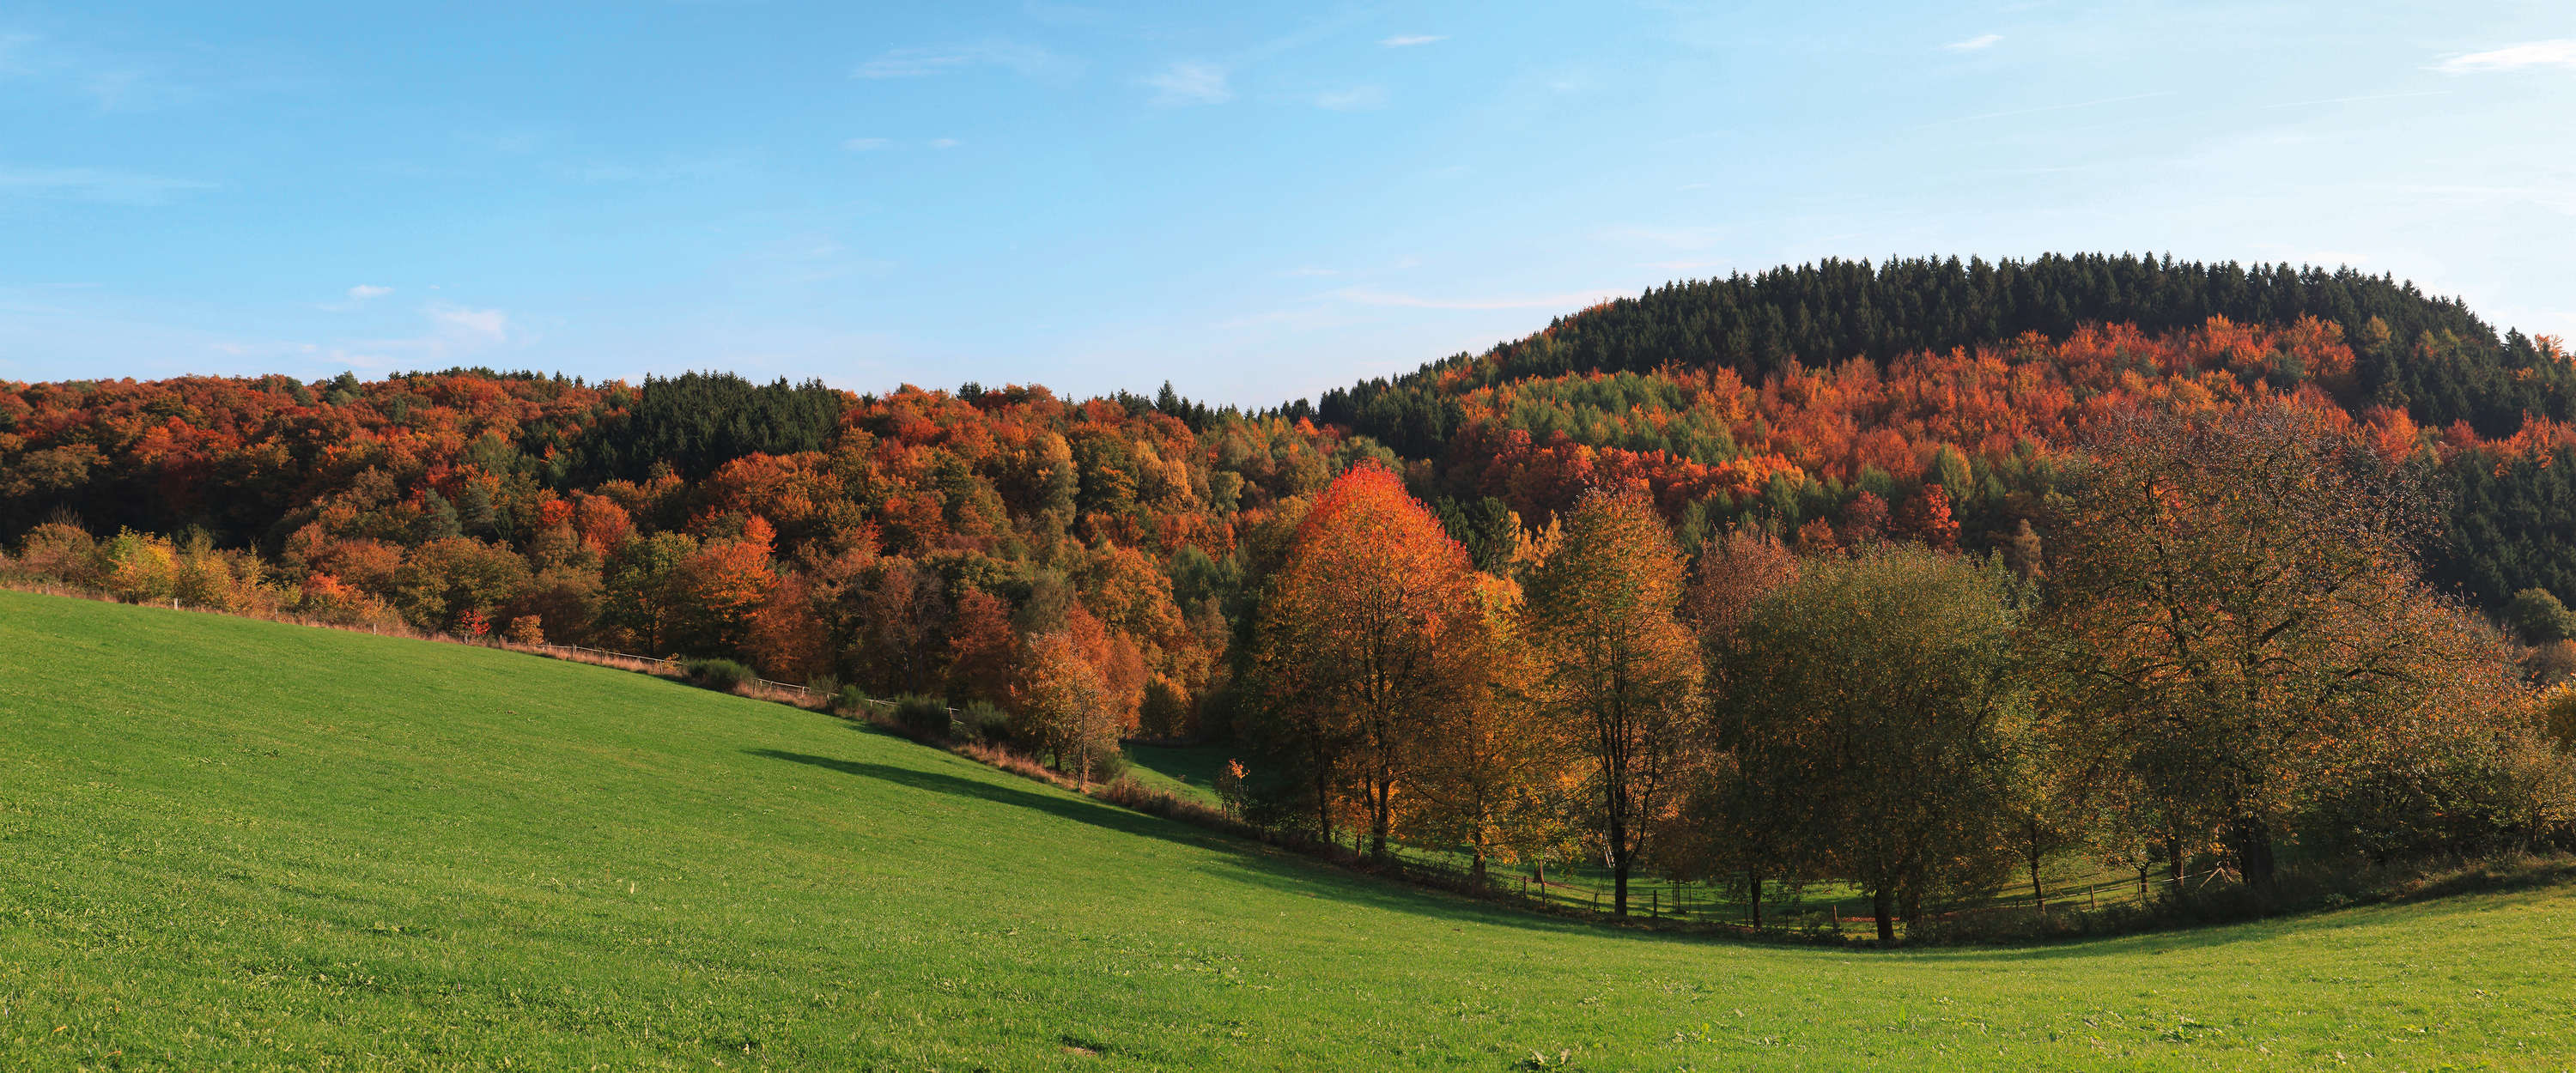             Fotomural Bosque y pradera - Colorido bosque caducifolio en otoño
        